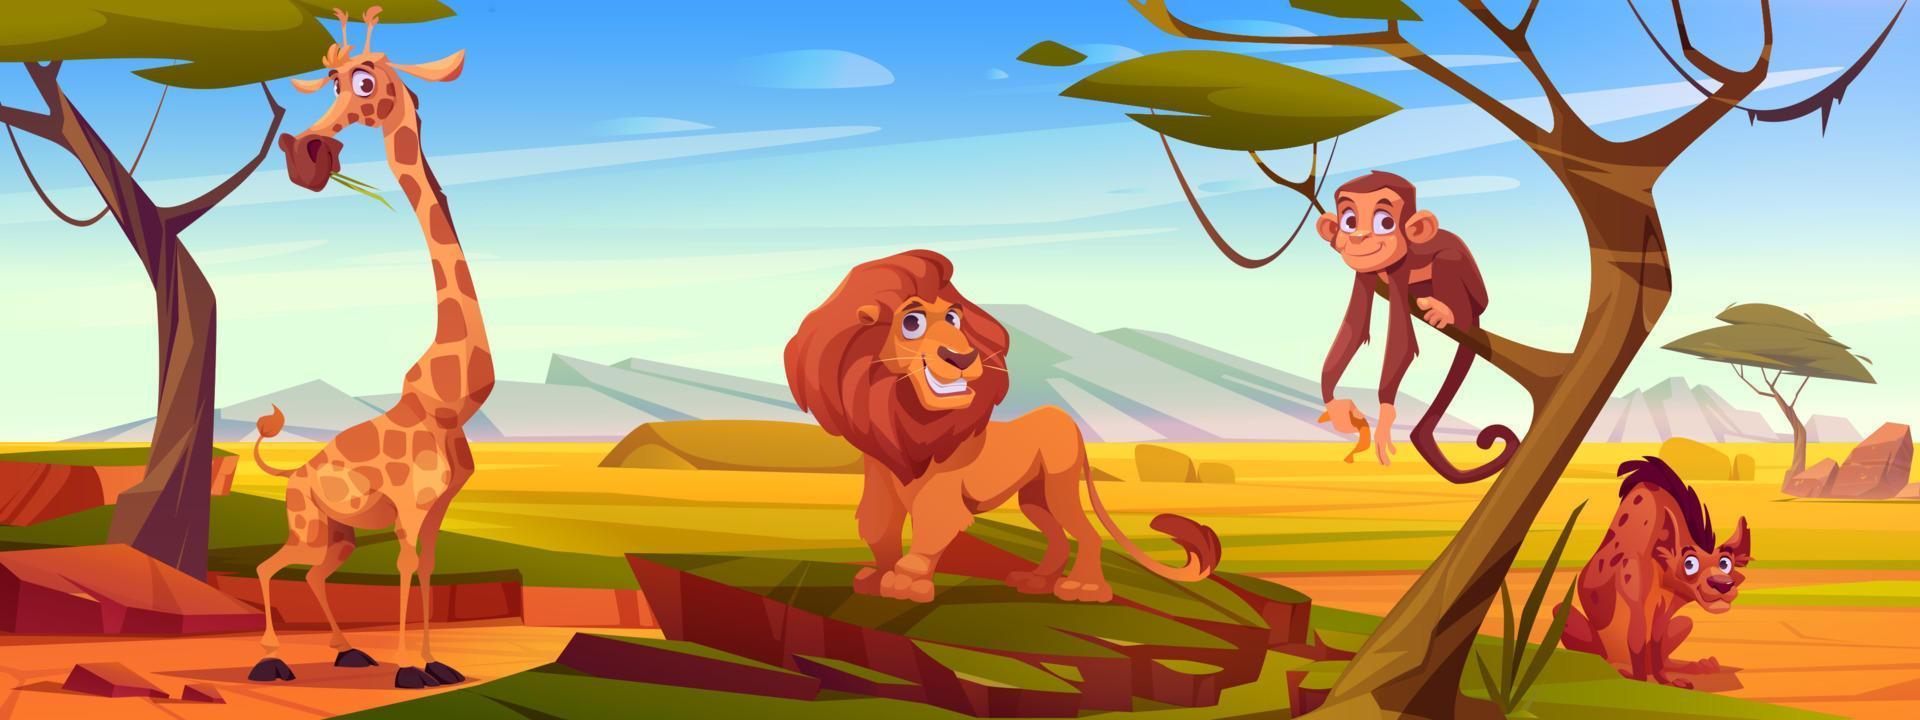 animais africanos dos desenhos animados na savana, animais selvagens vetor